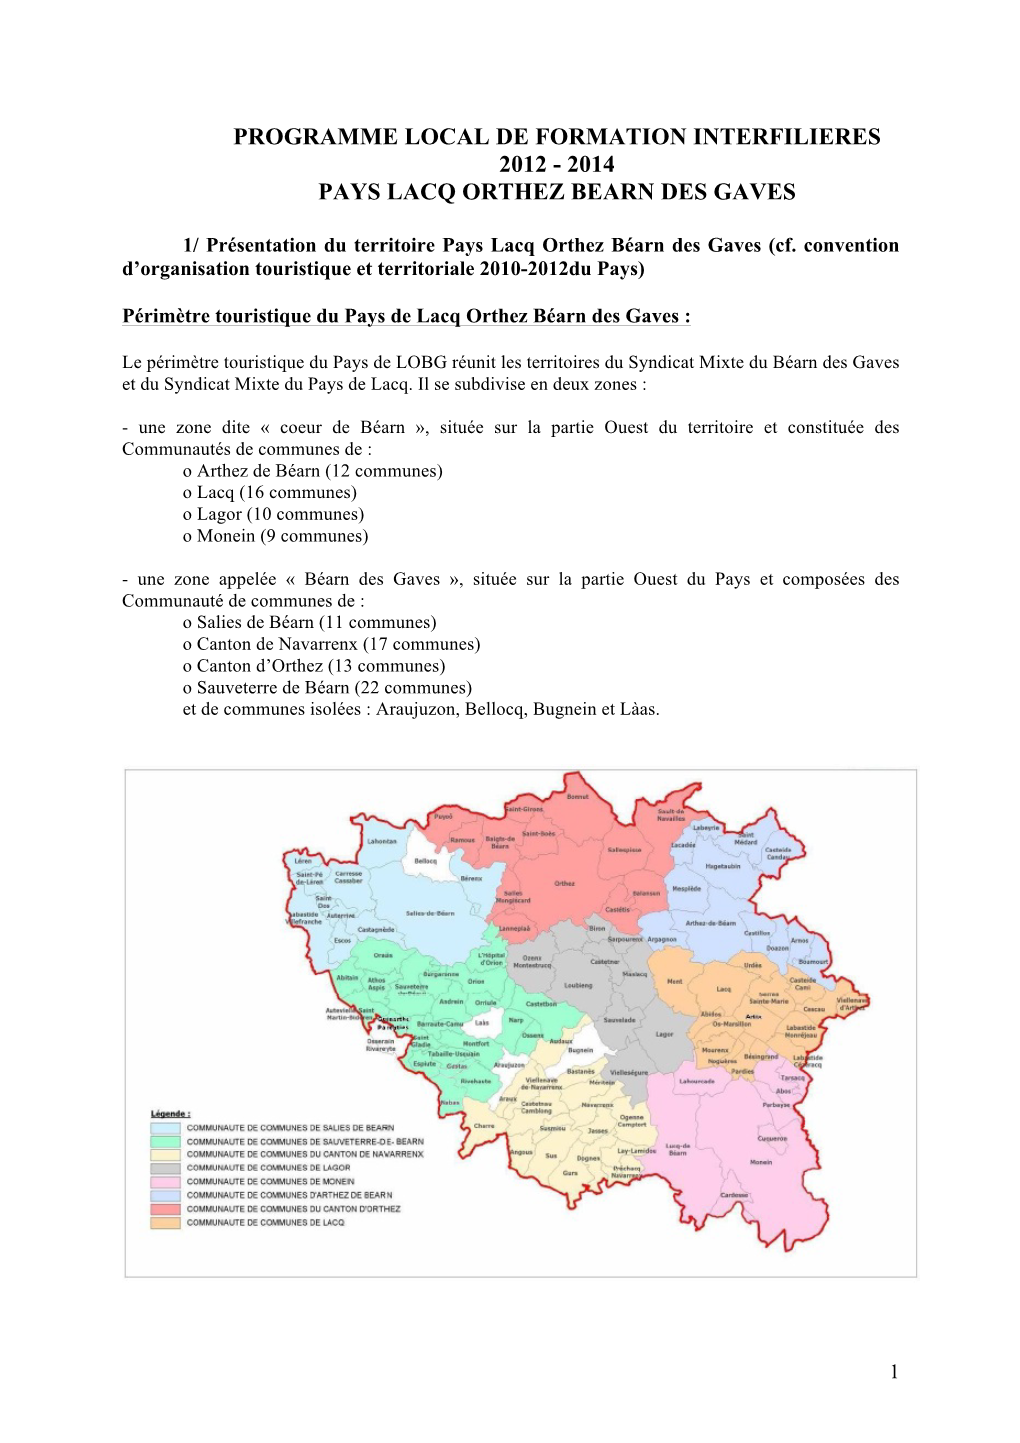 Les Bases Du Projet PLFI PLOBG 2012-2014